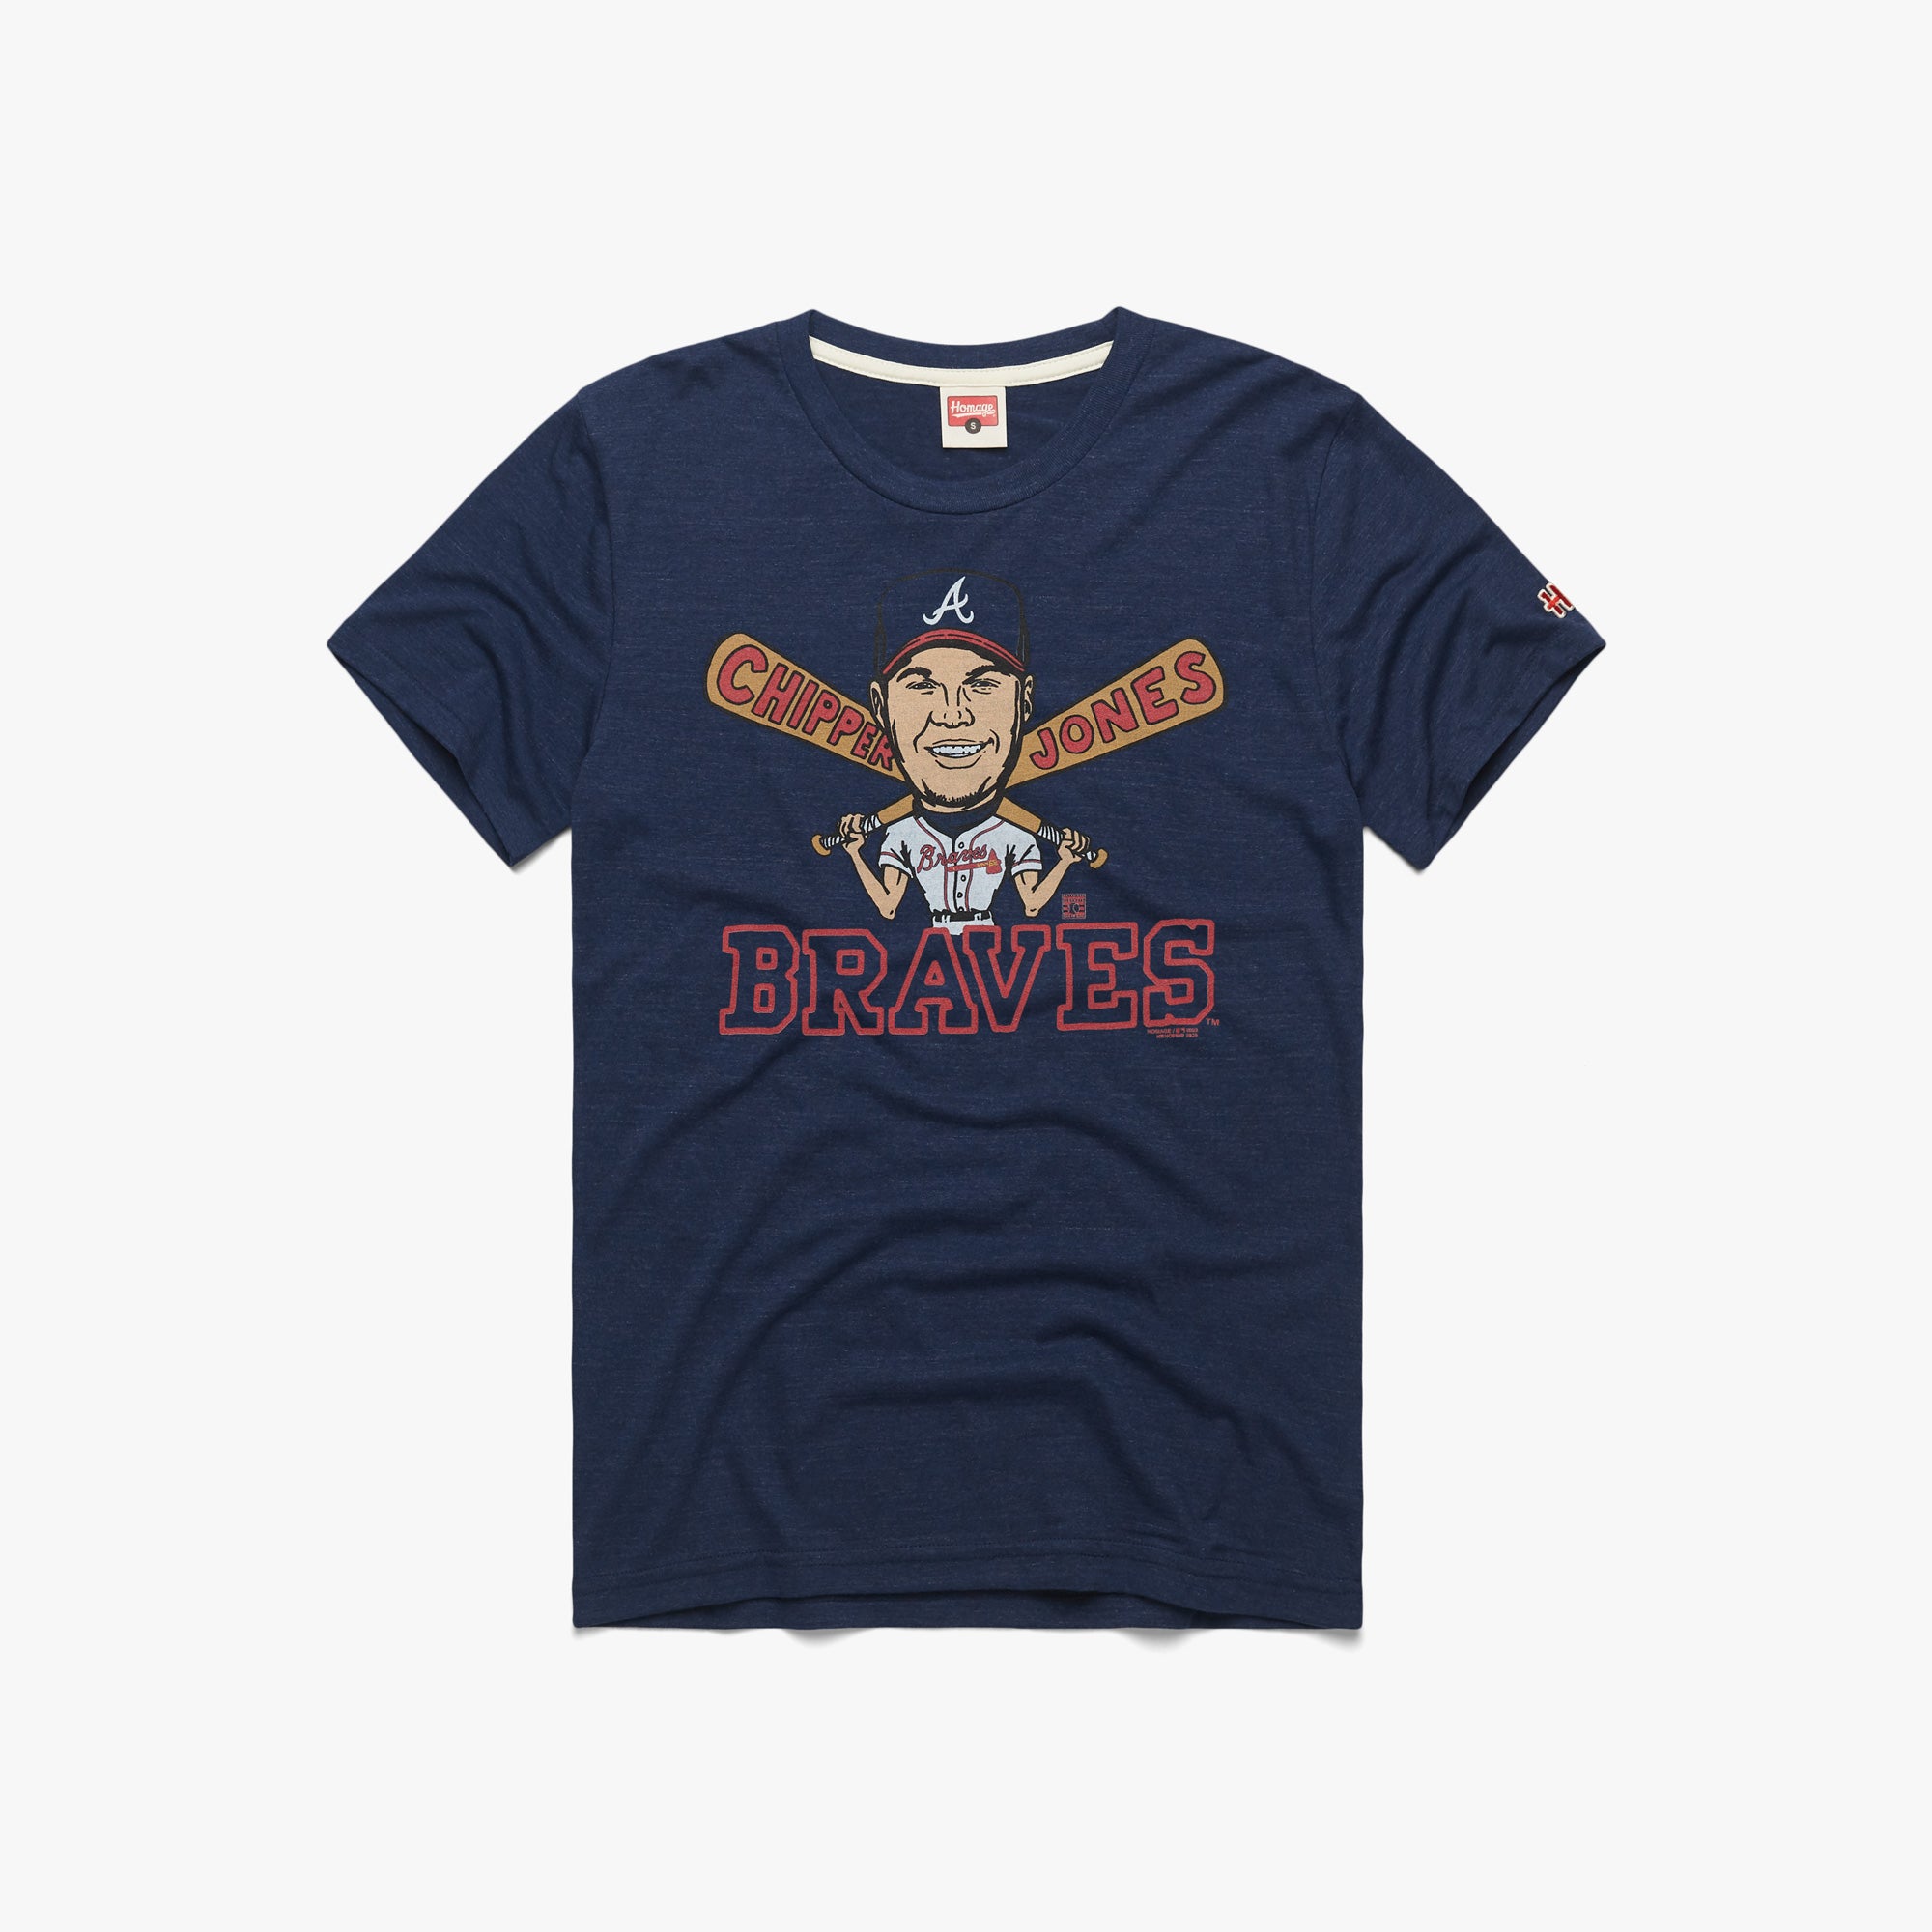 Chipper Jones Braves | Retro Atlanta Braves Chipper Jones T-Shirt